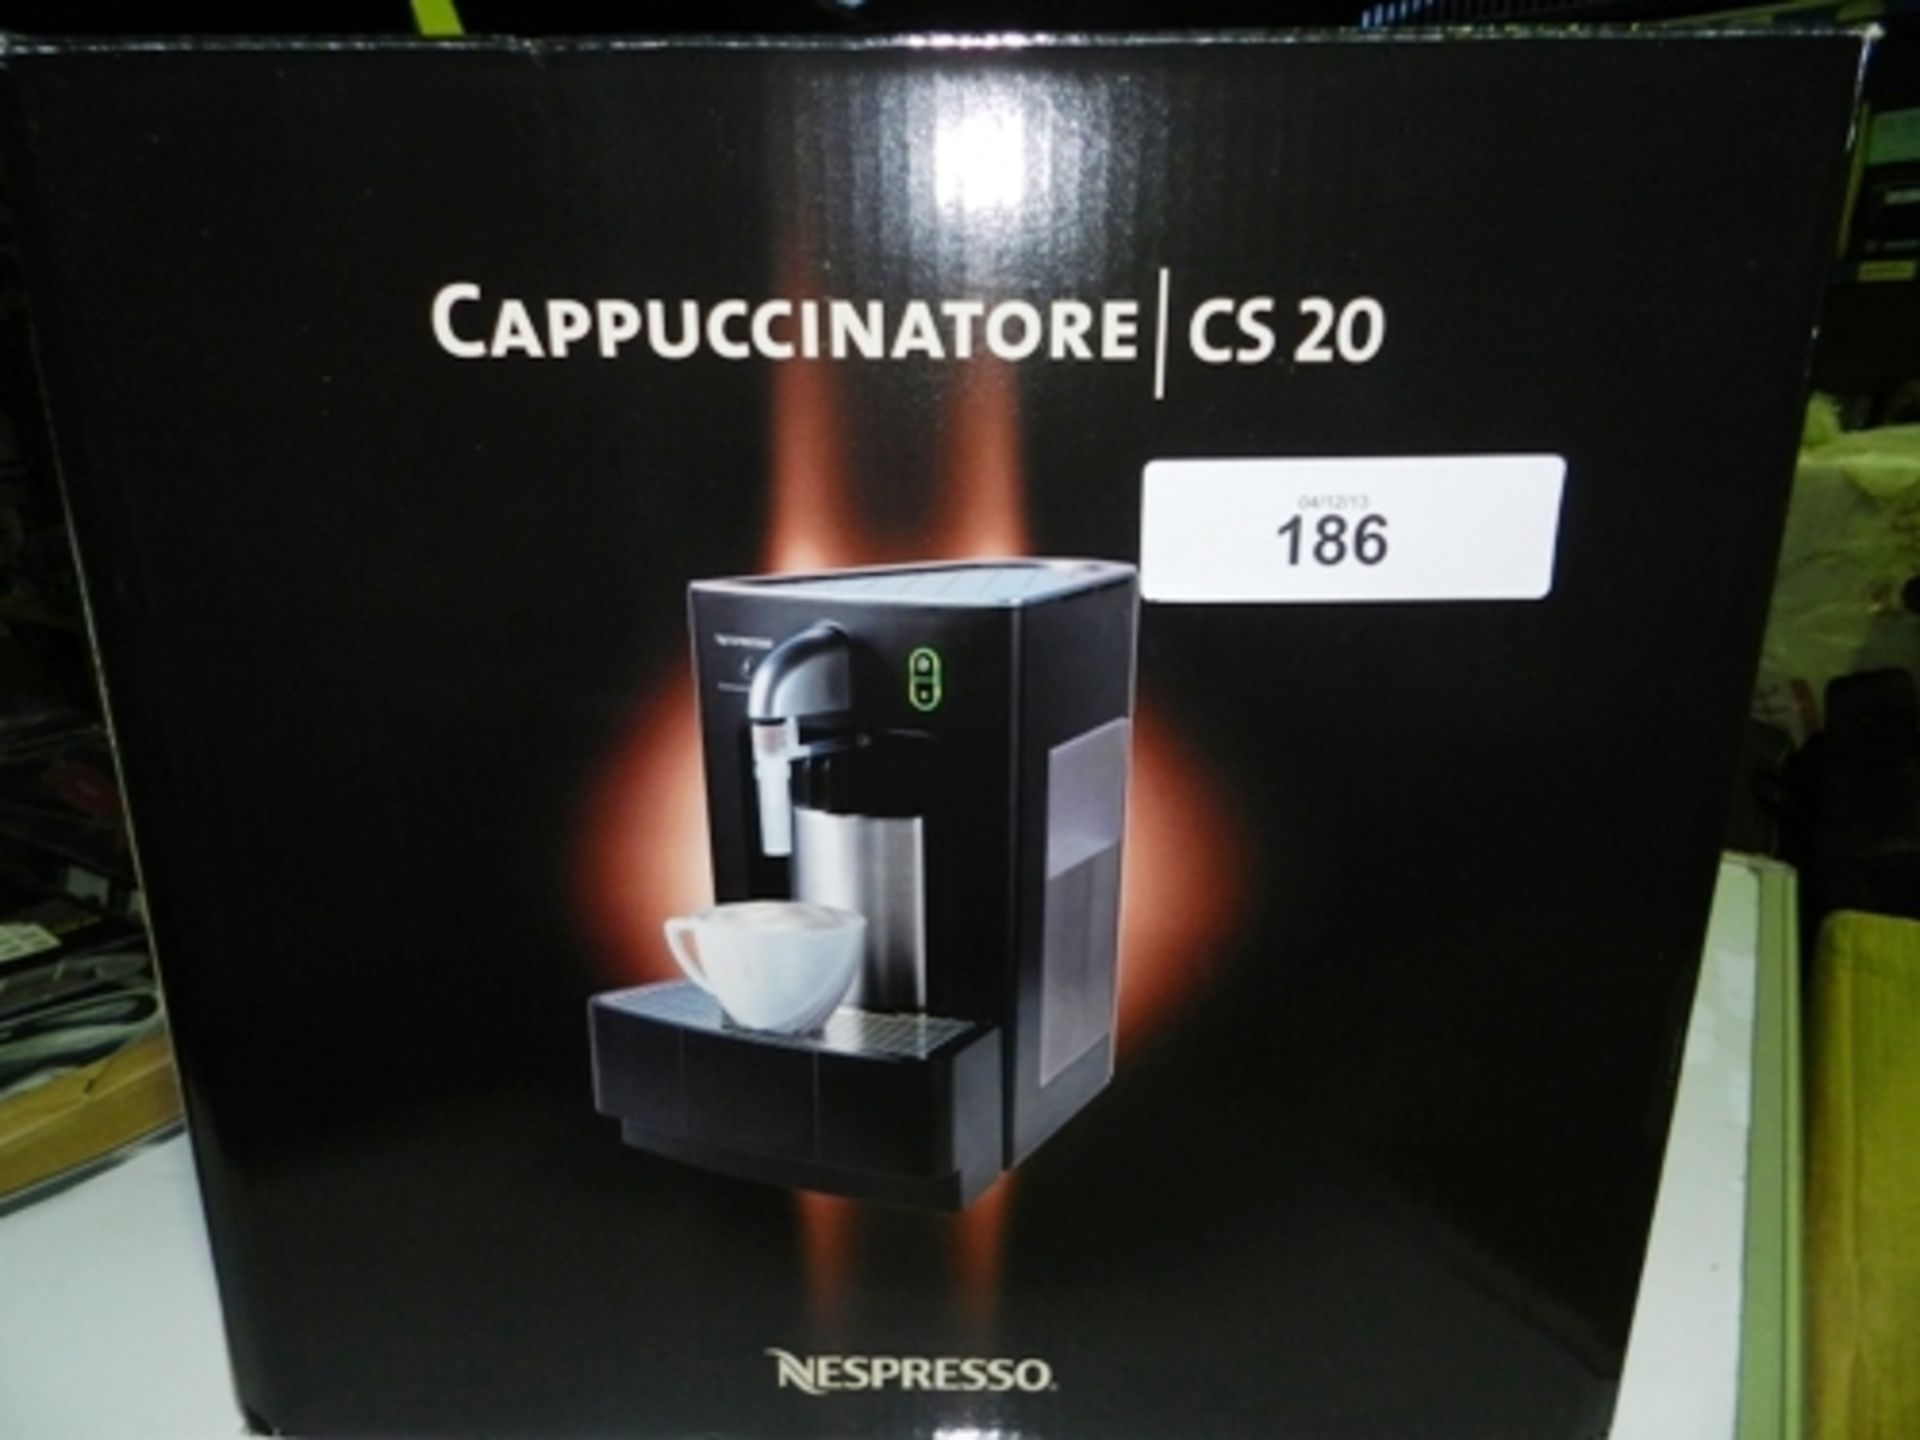 Nespresso Cappuccinatore CS20 machine, 240V, model CS20 - in box